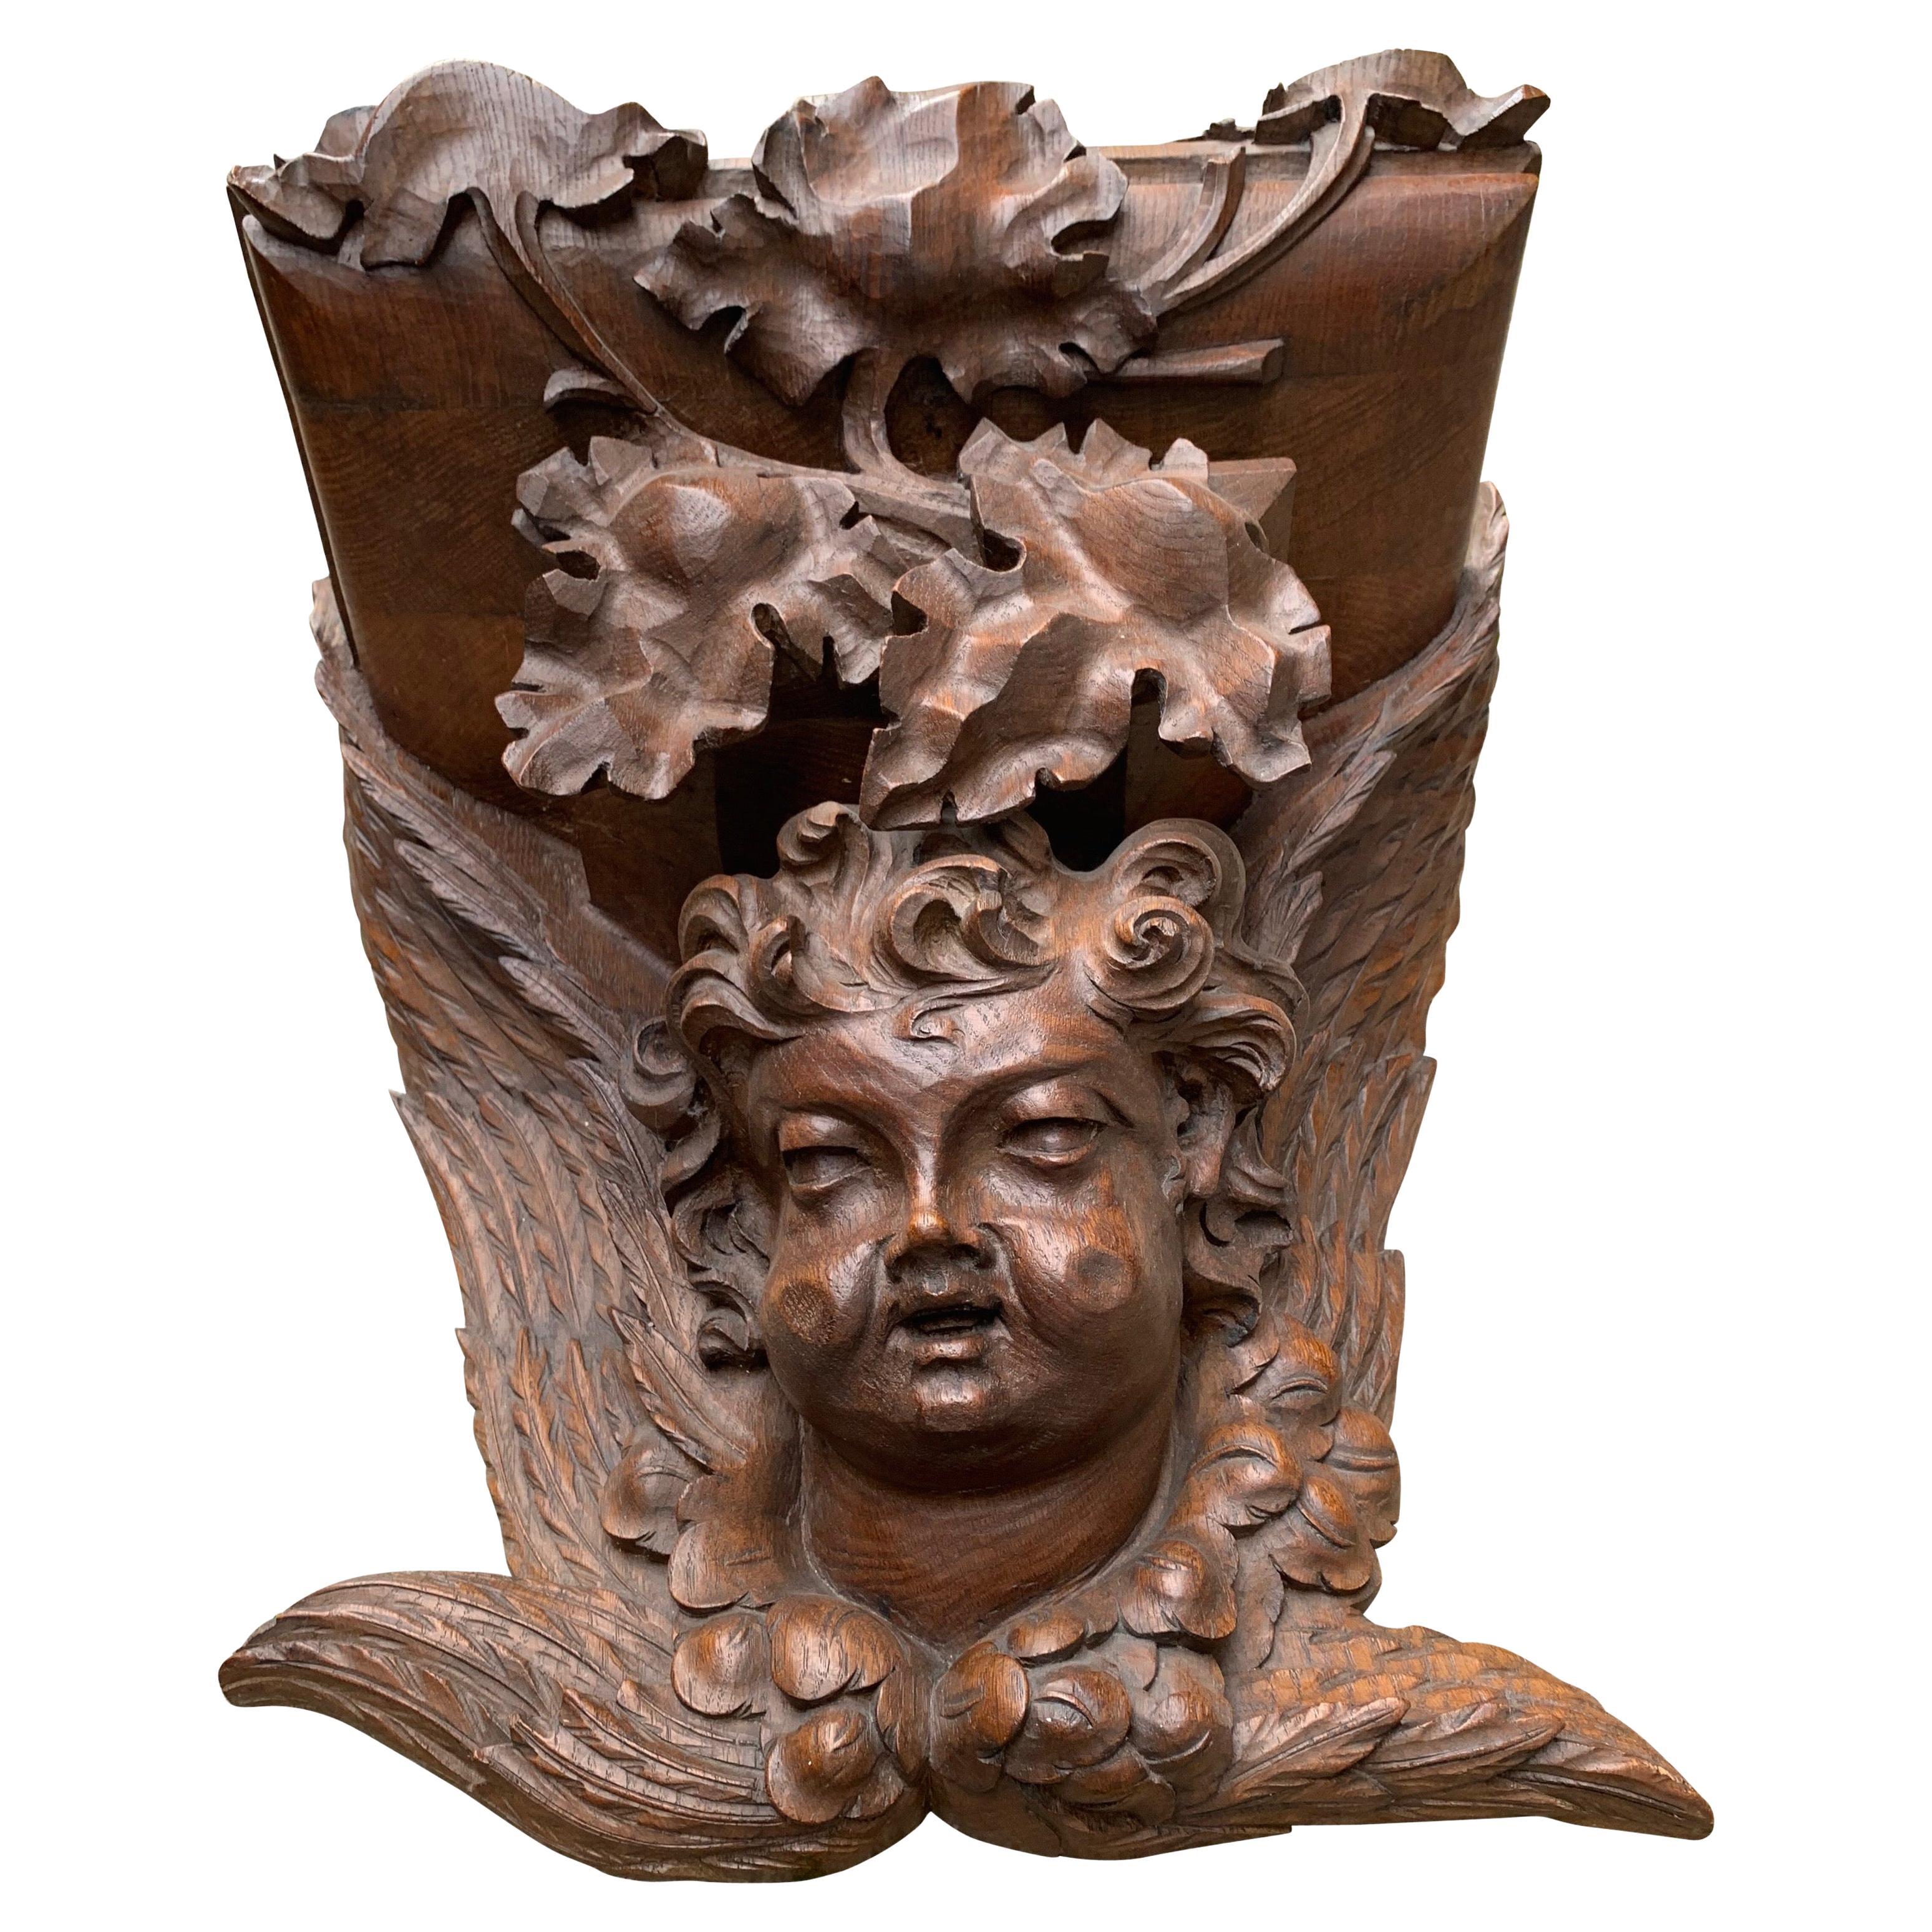 Extra groß und in Museumsqualität gotische Kunsthalterung Regal-Regalkorbel mit Engel-Skulptur